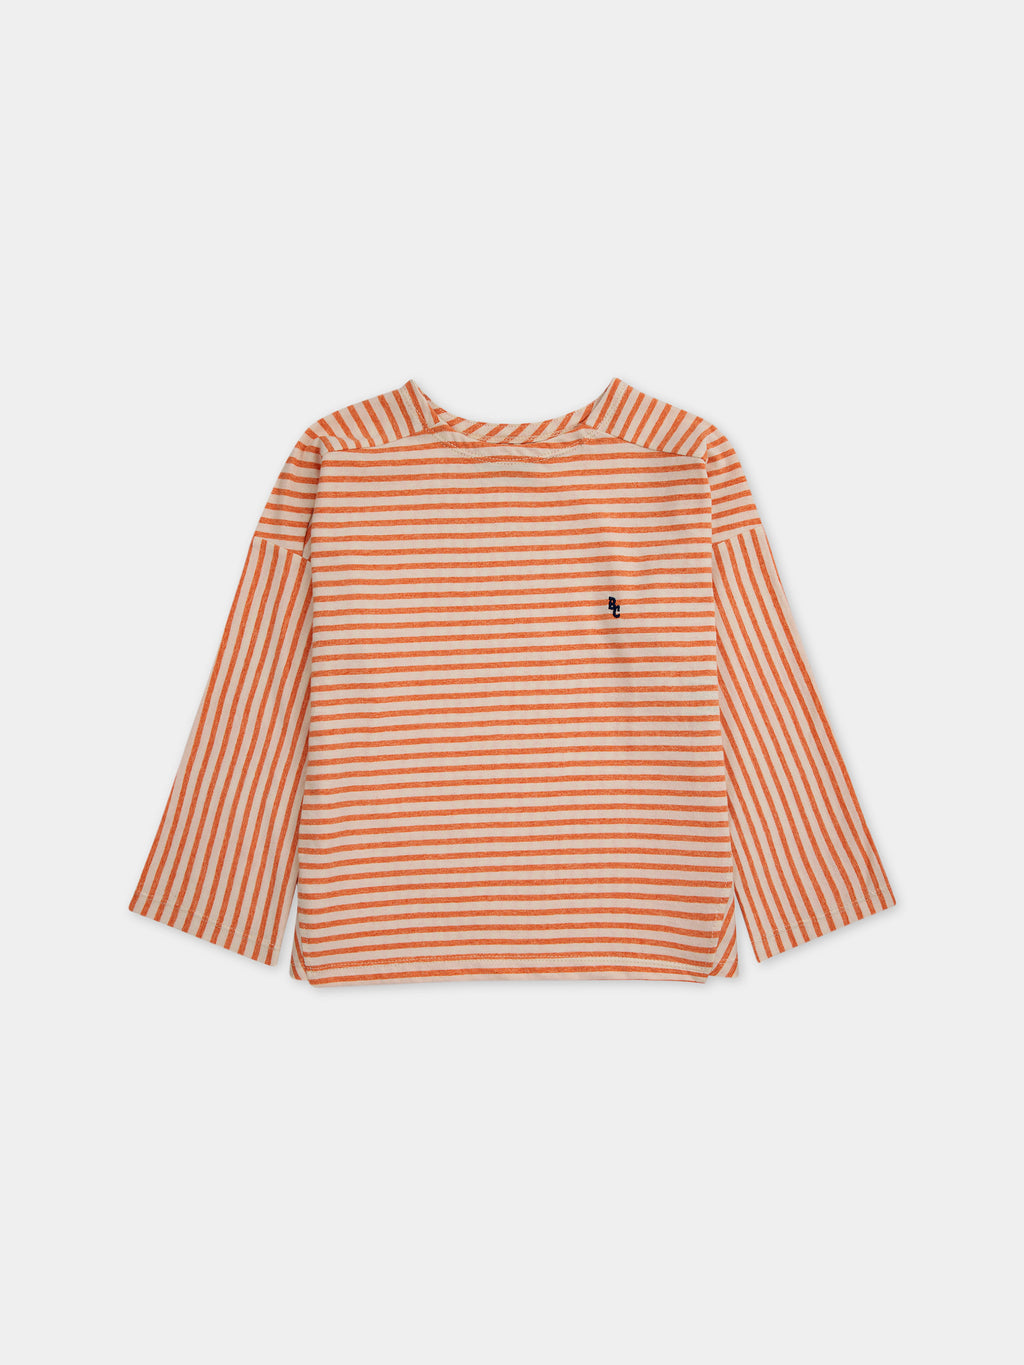 T-shirt arancione per bambini con righe